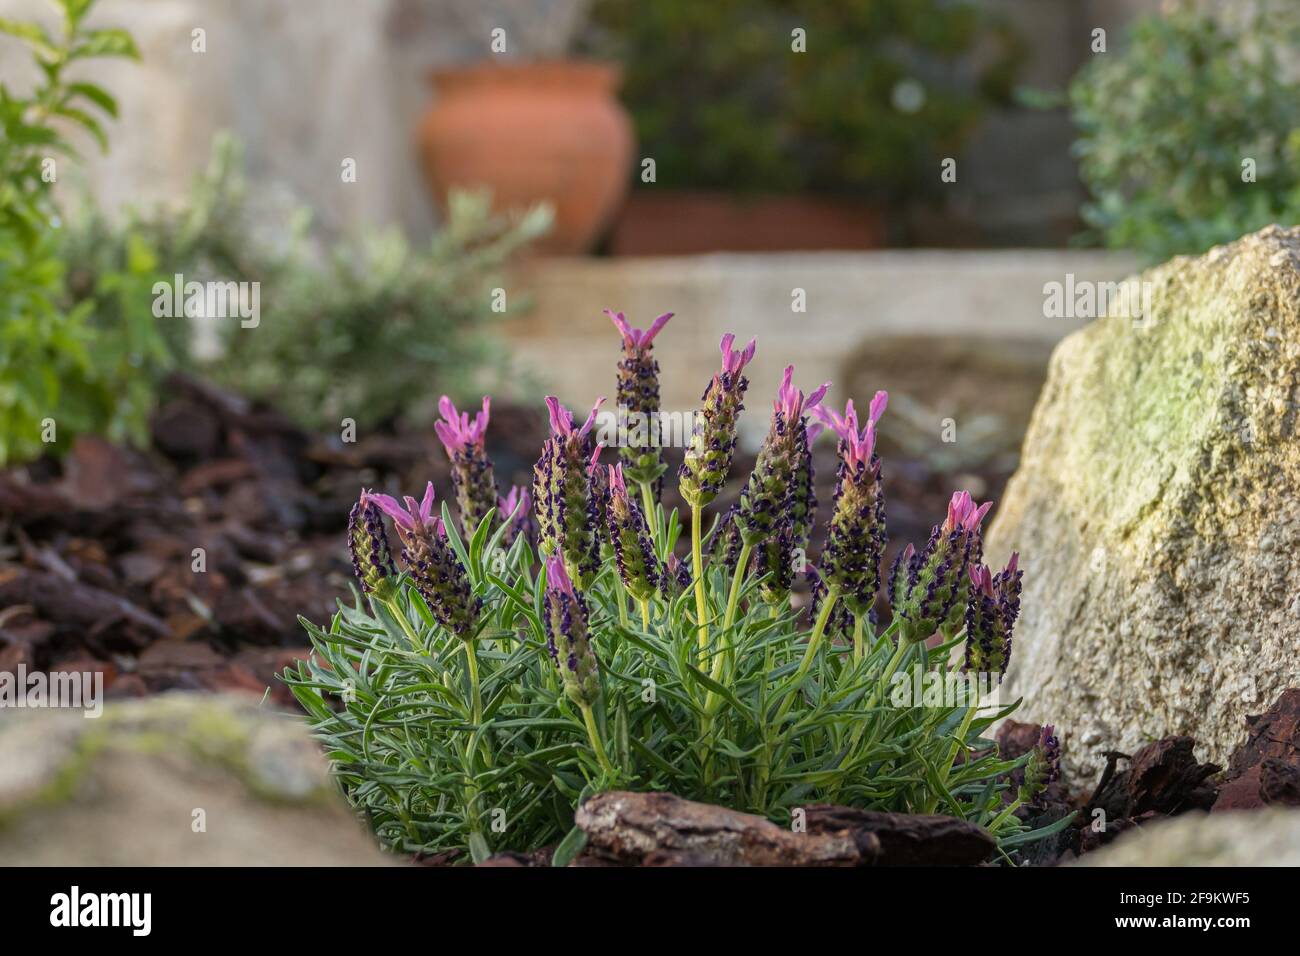 Lavandula stoechas blooms in an outdoor garden in spring Stock Photo